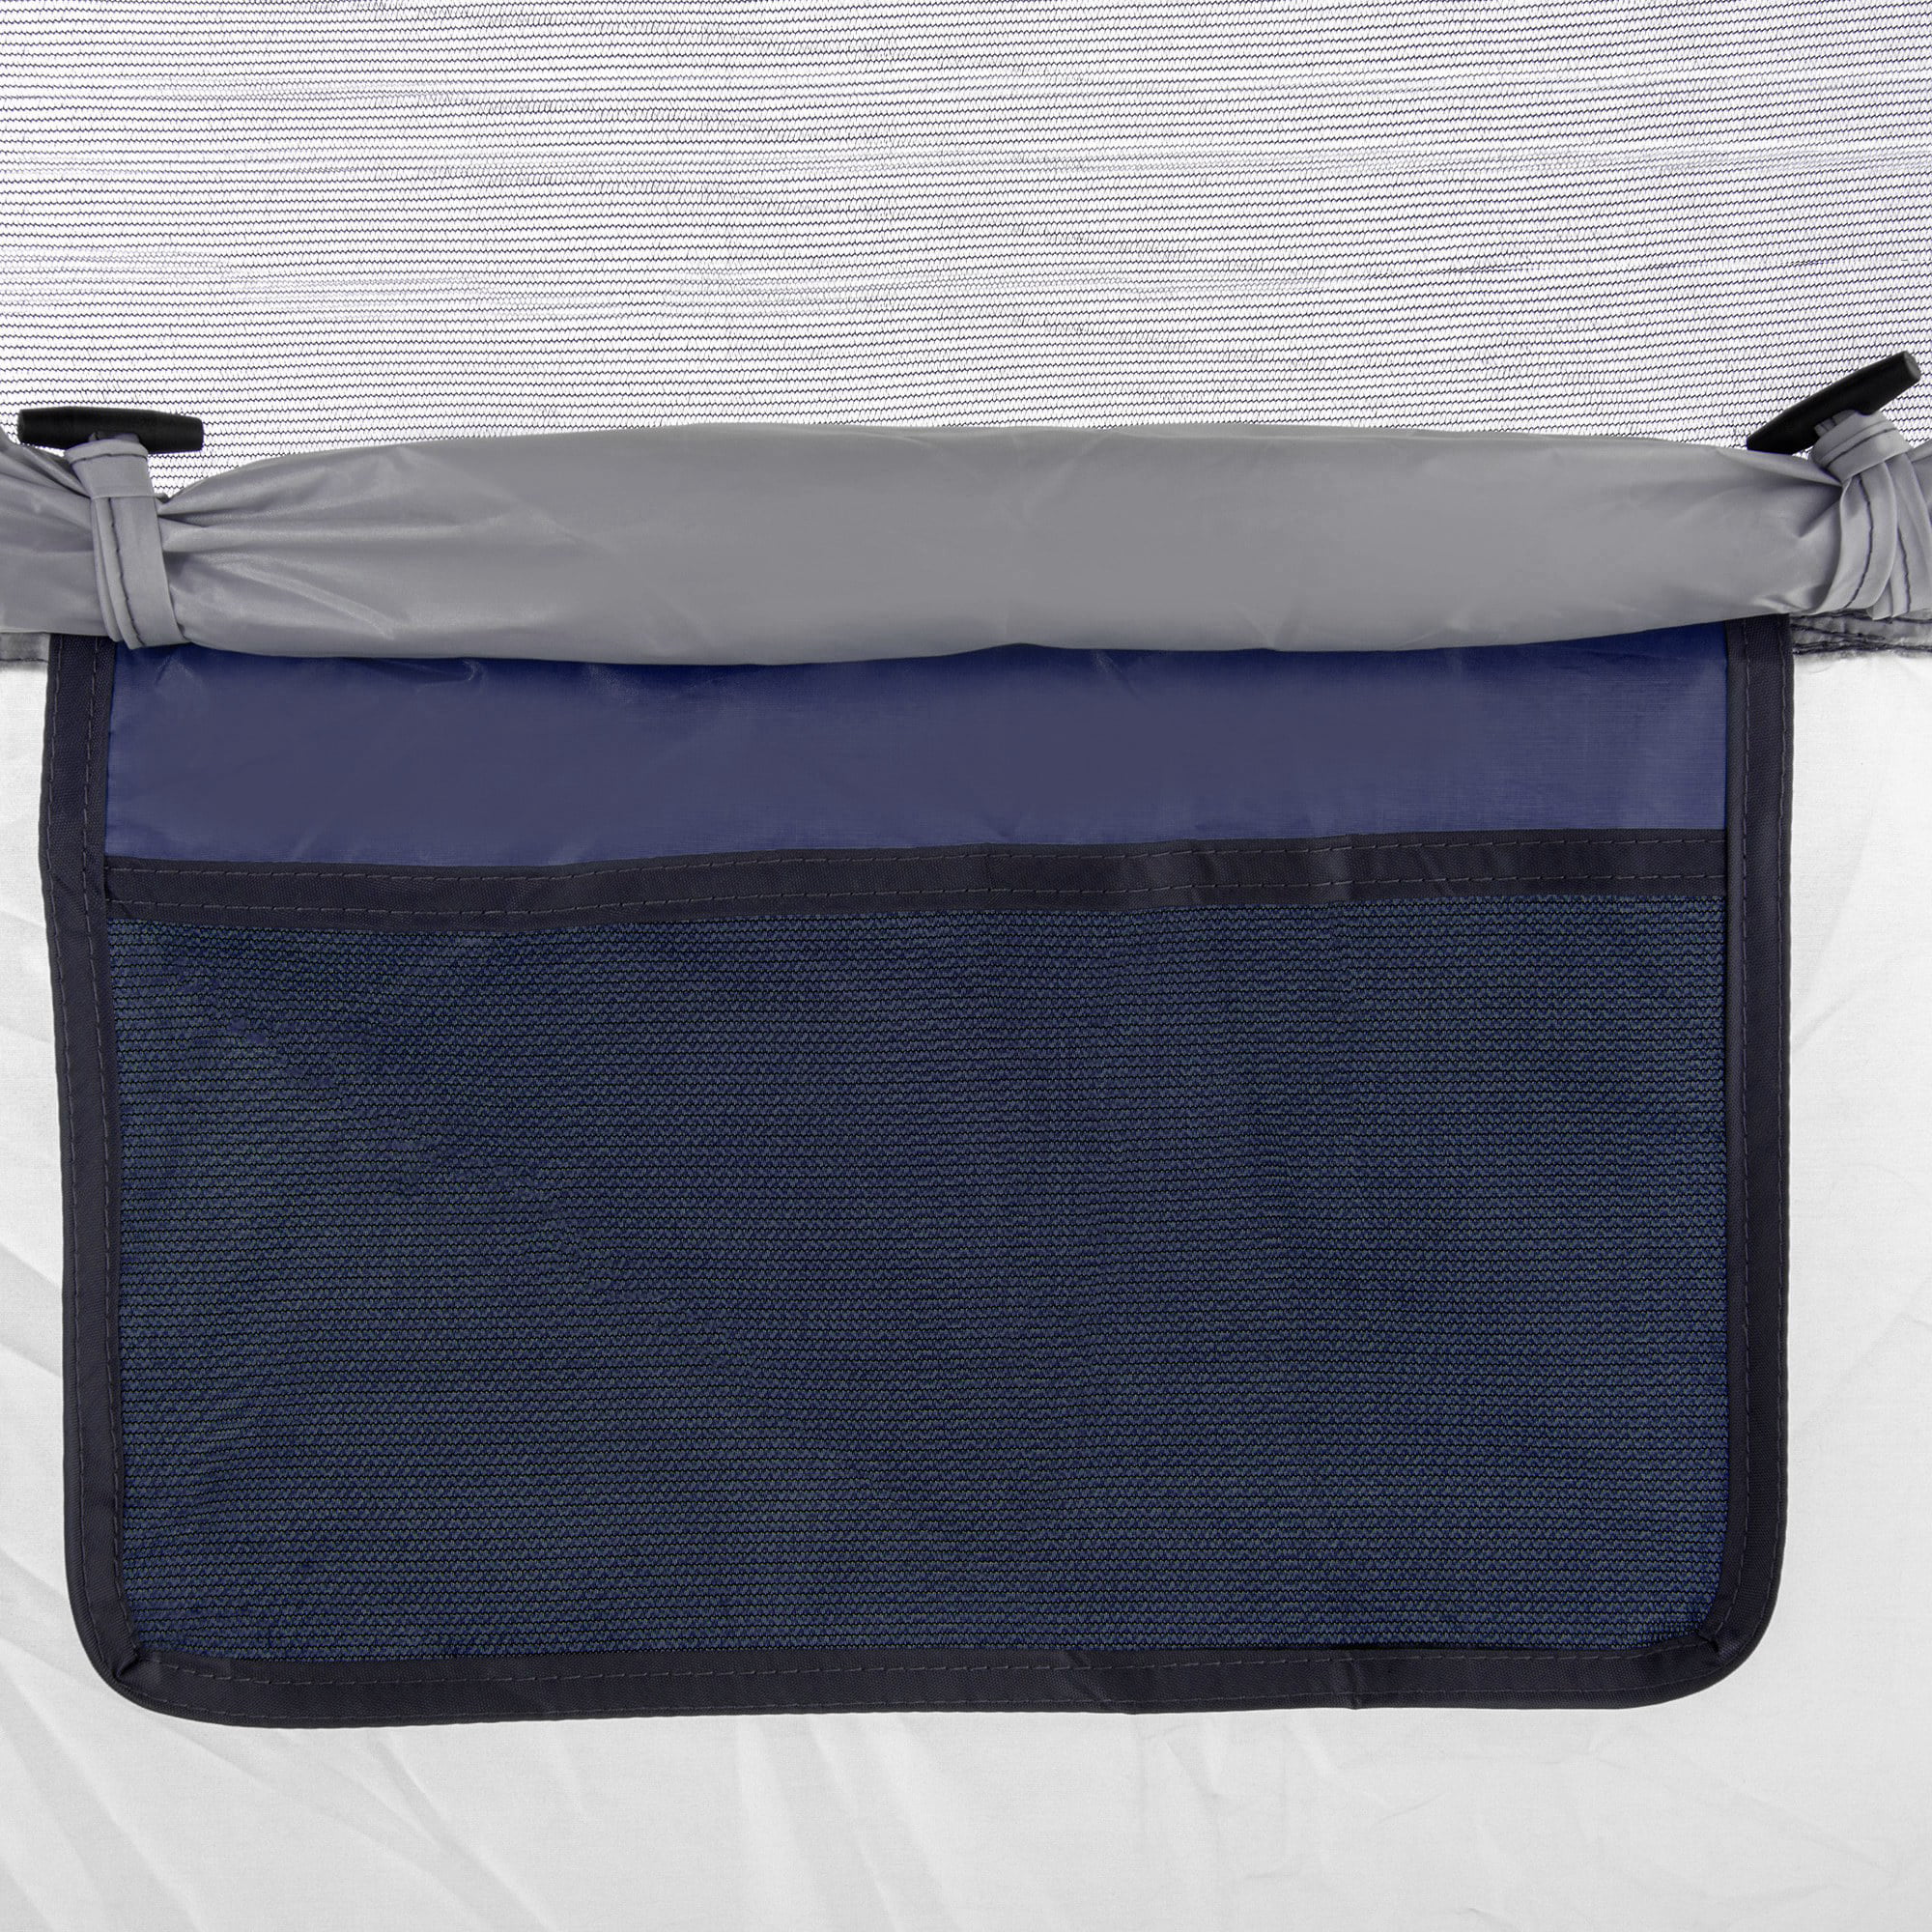 OUTSUNNY Tente pop up montage instantané - tente de camping 2 pers. - 1  porte + 2 fenêtres - dim. 2,2L x 1,08l x 1,1H m - fibre verre polyester  bleu gris pas cher 